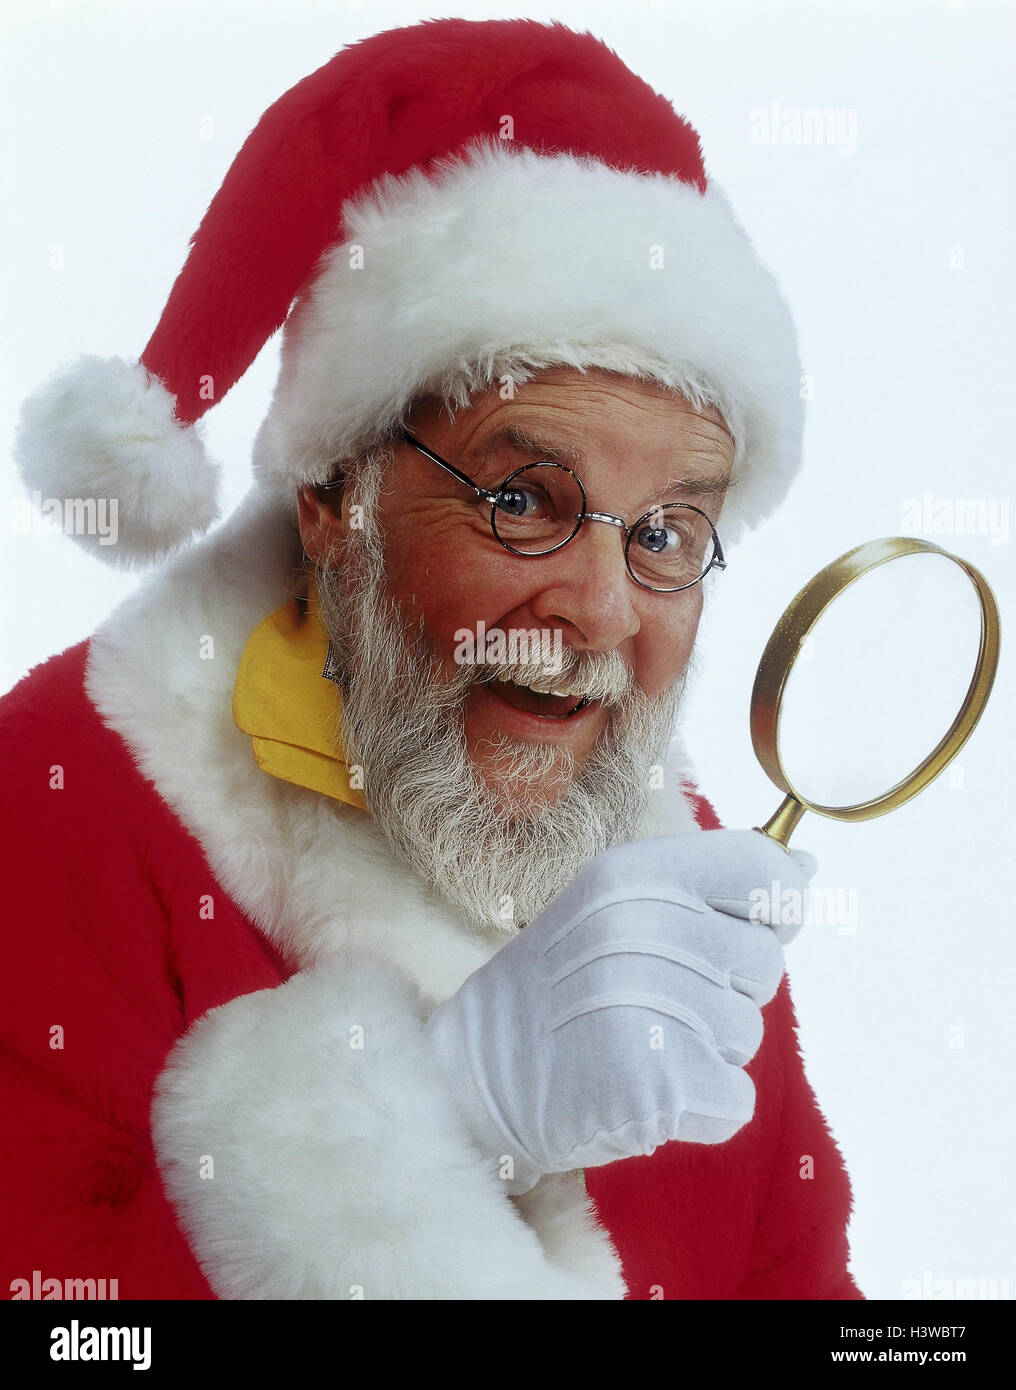  À la recherche du Père Noël The Search for Santa Claus